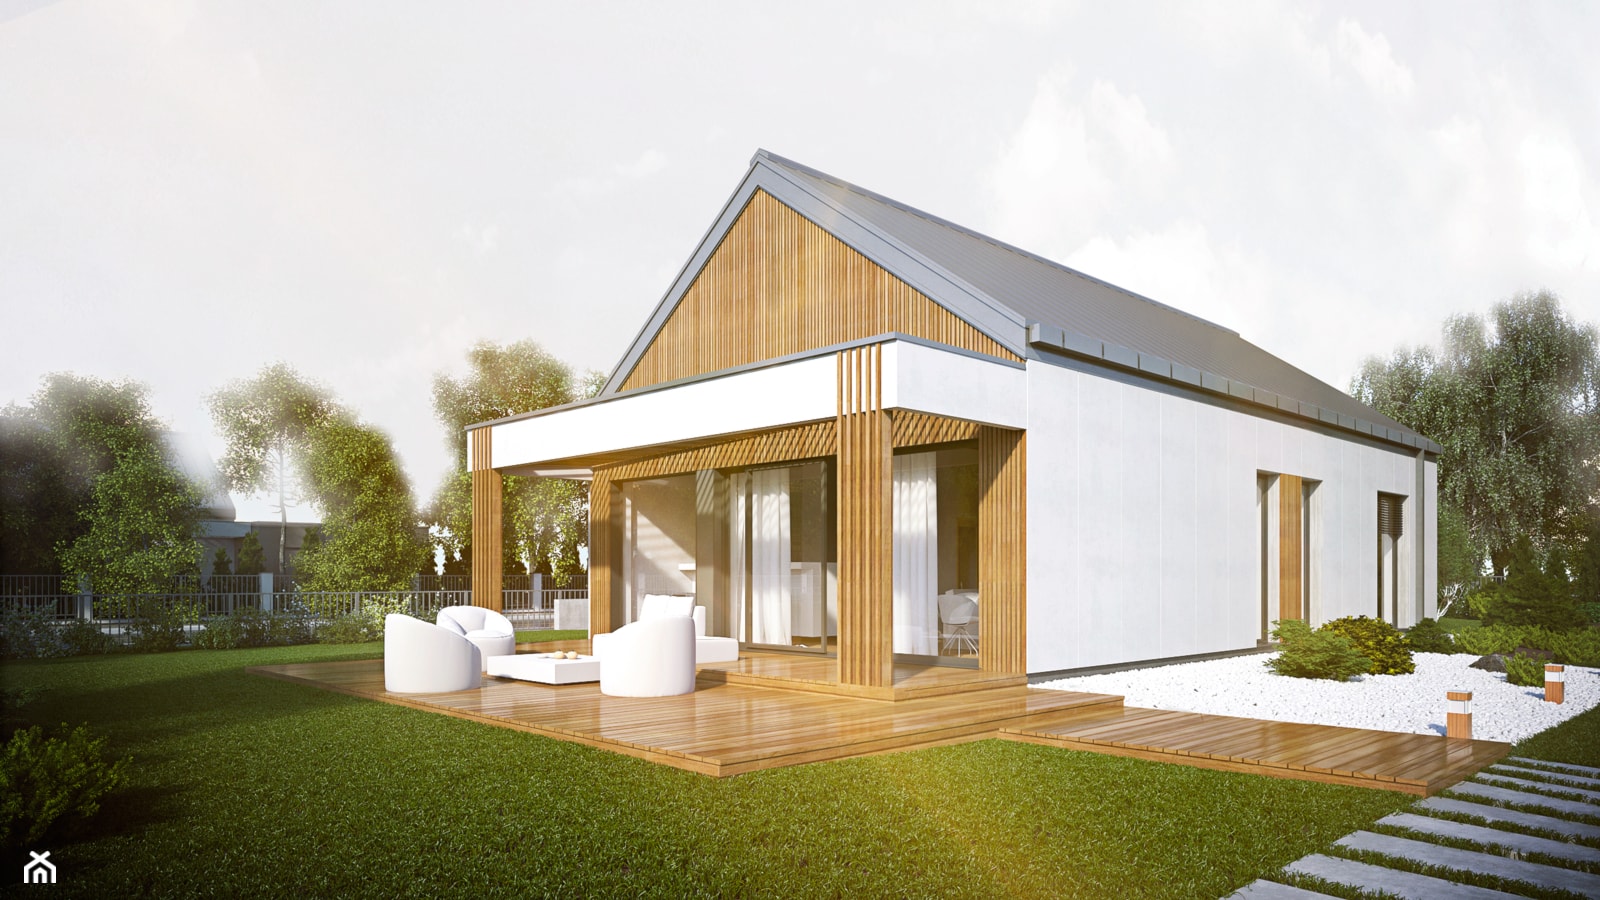 Projekt domu niskoenergetycznego HG 10 energo+ HexaGreen - zdjęcie od Hexa Green_Projekty domów pasywnych i niskoenergetycznych - Homebook